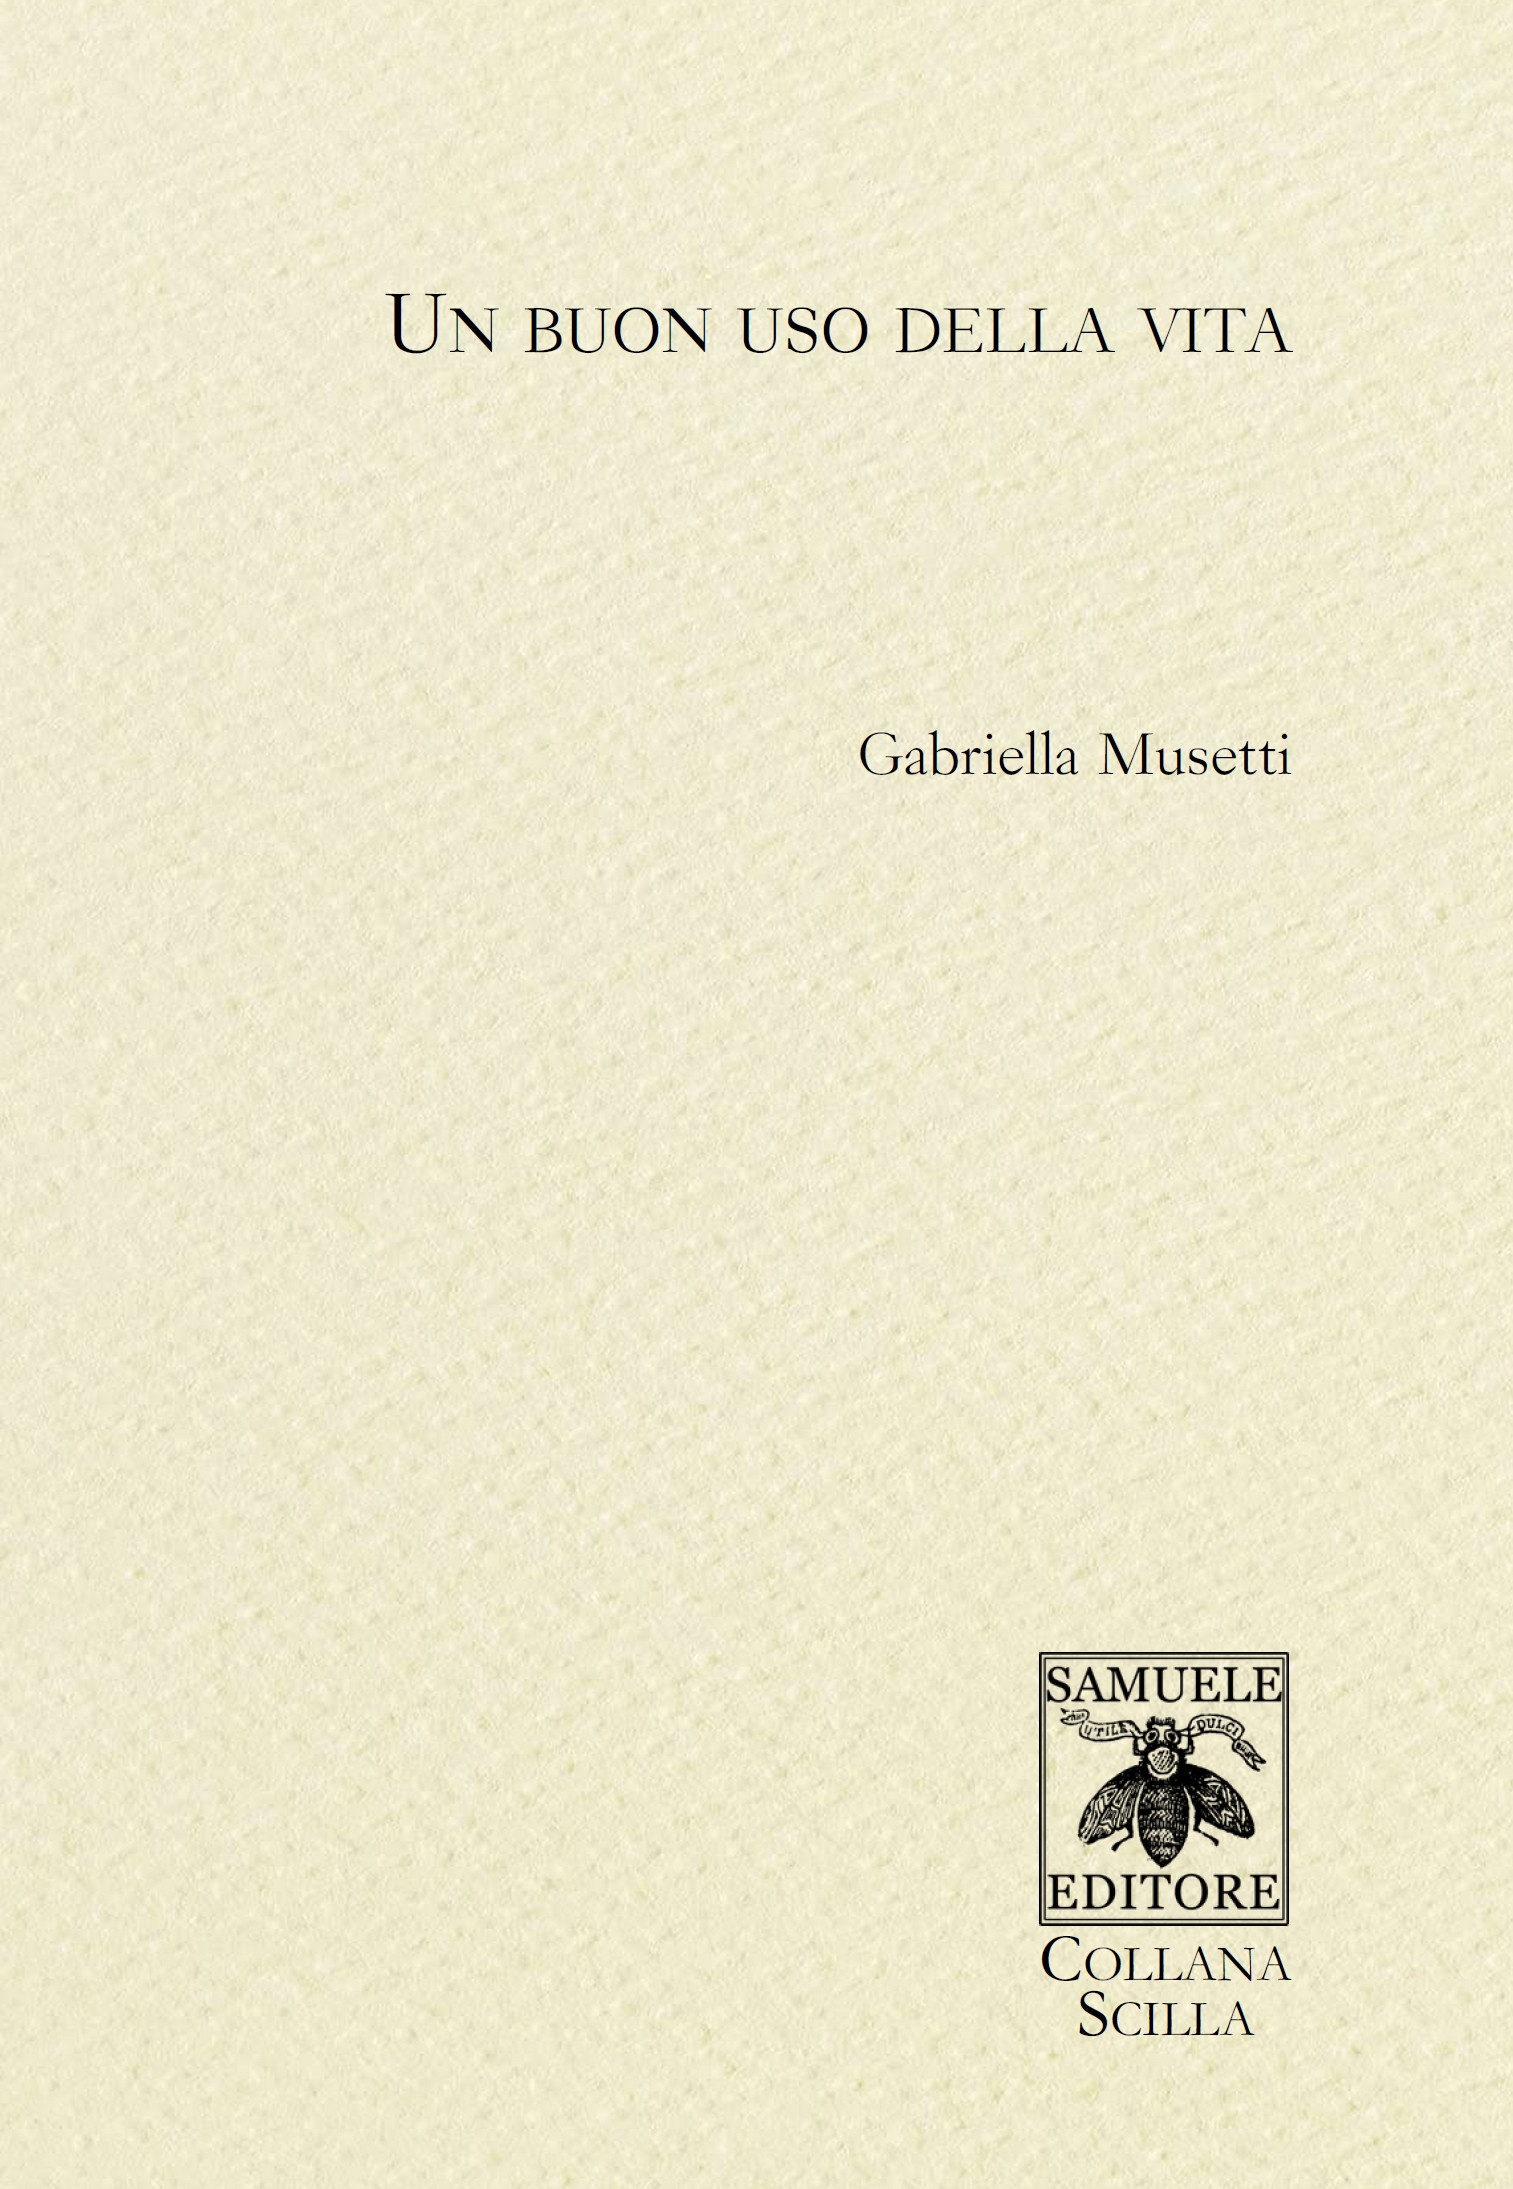 Una domanda al Poeta: Gabriella Musetti